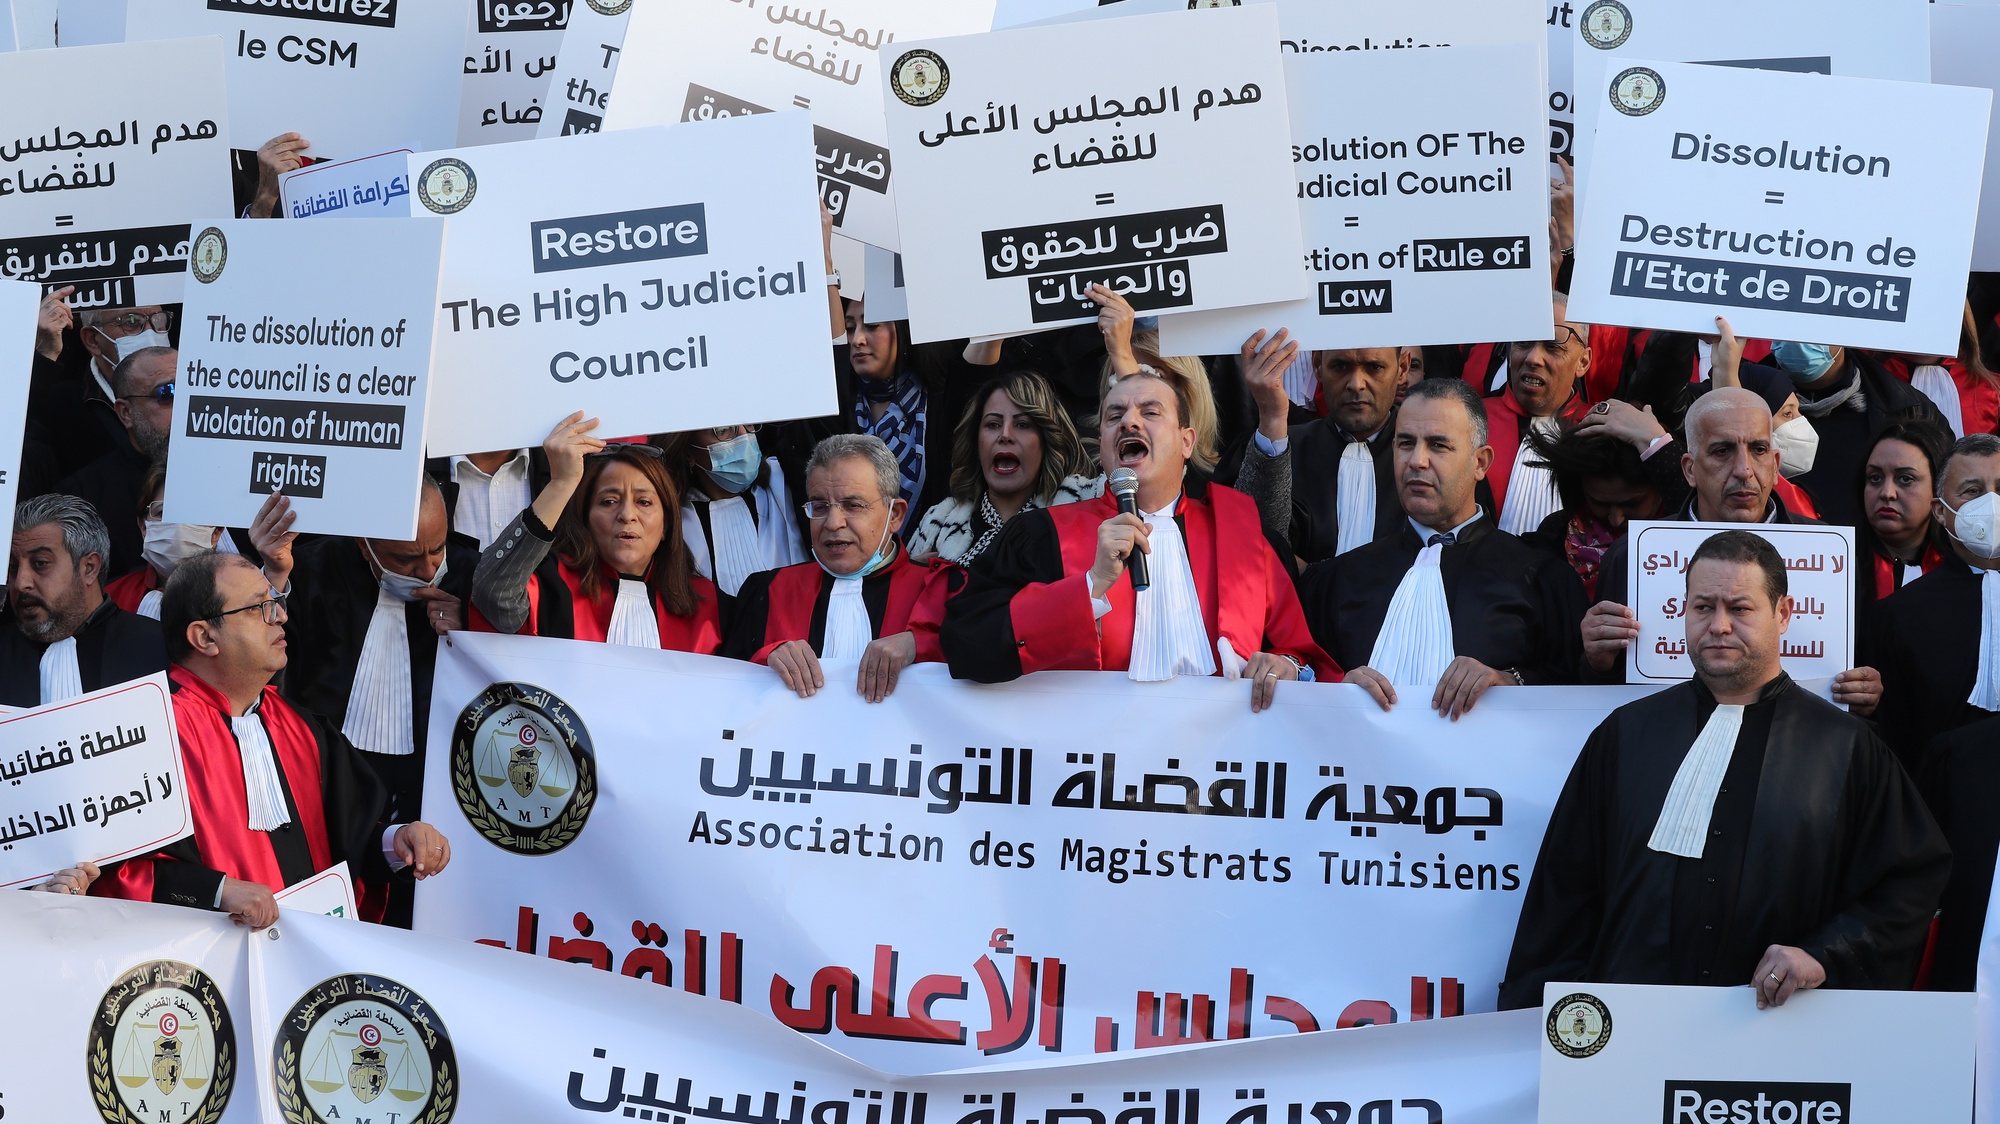 O protesto dos magistrados e advogados na Tunísia